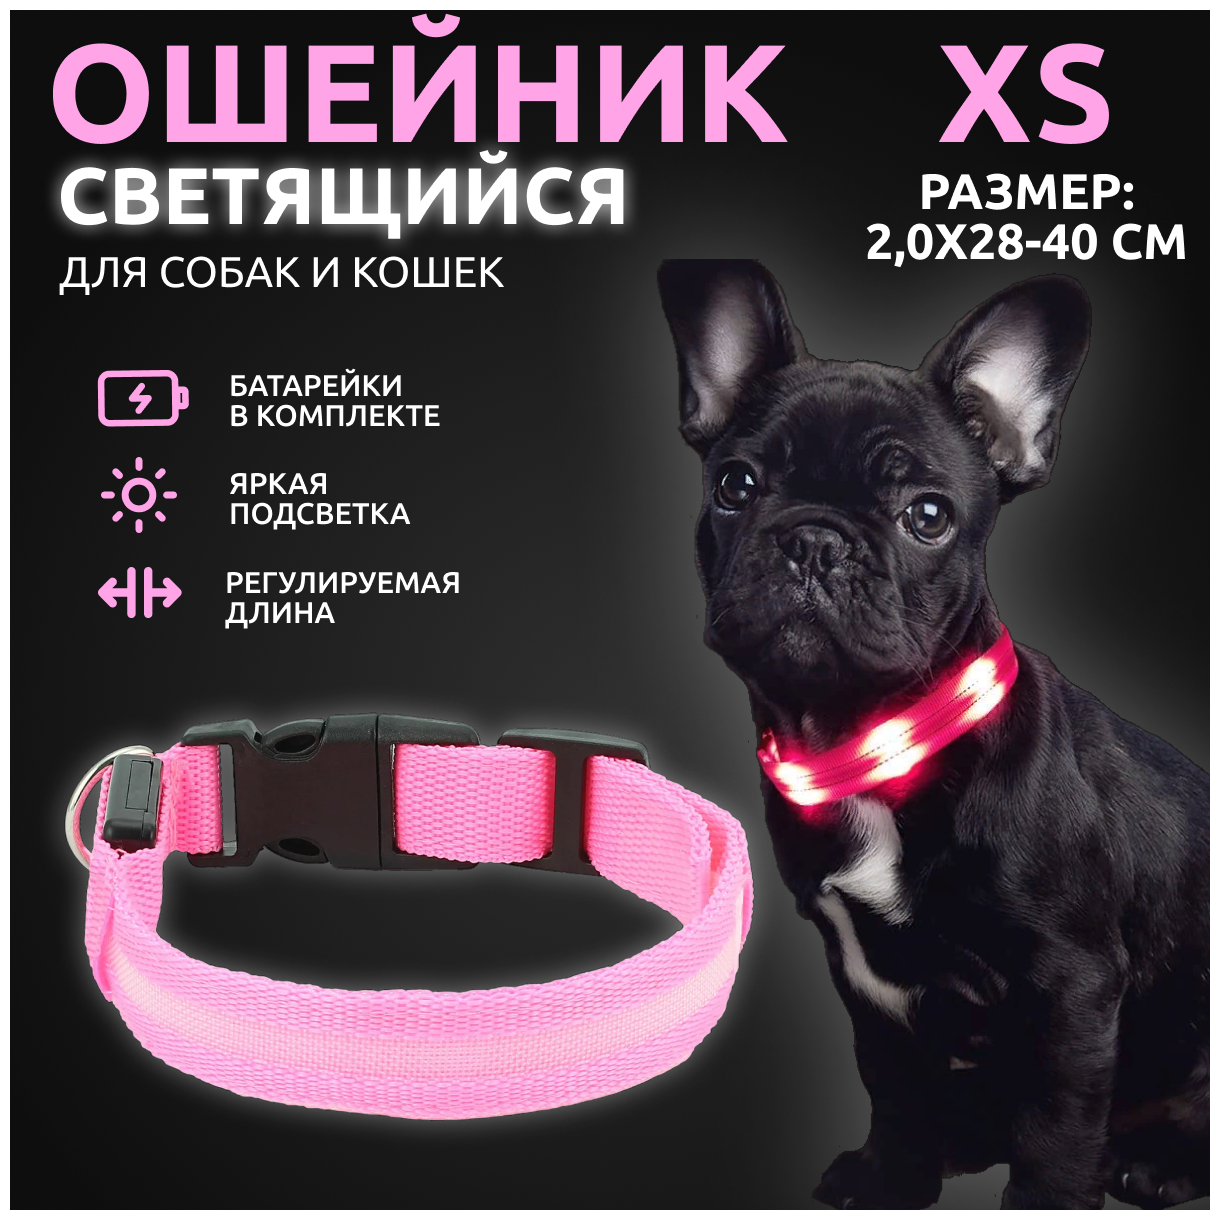 Ошейник светящийся для собак и кошек светодиодный нейлоновый розового цвета, размер XS - 2,0х28-40 см